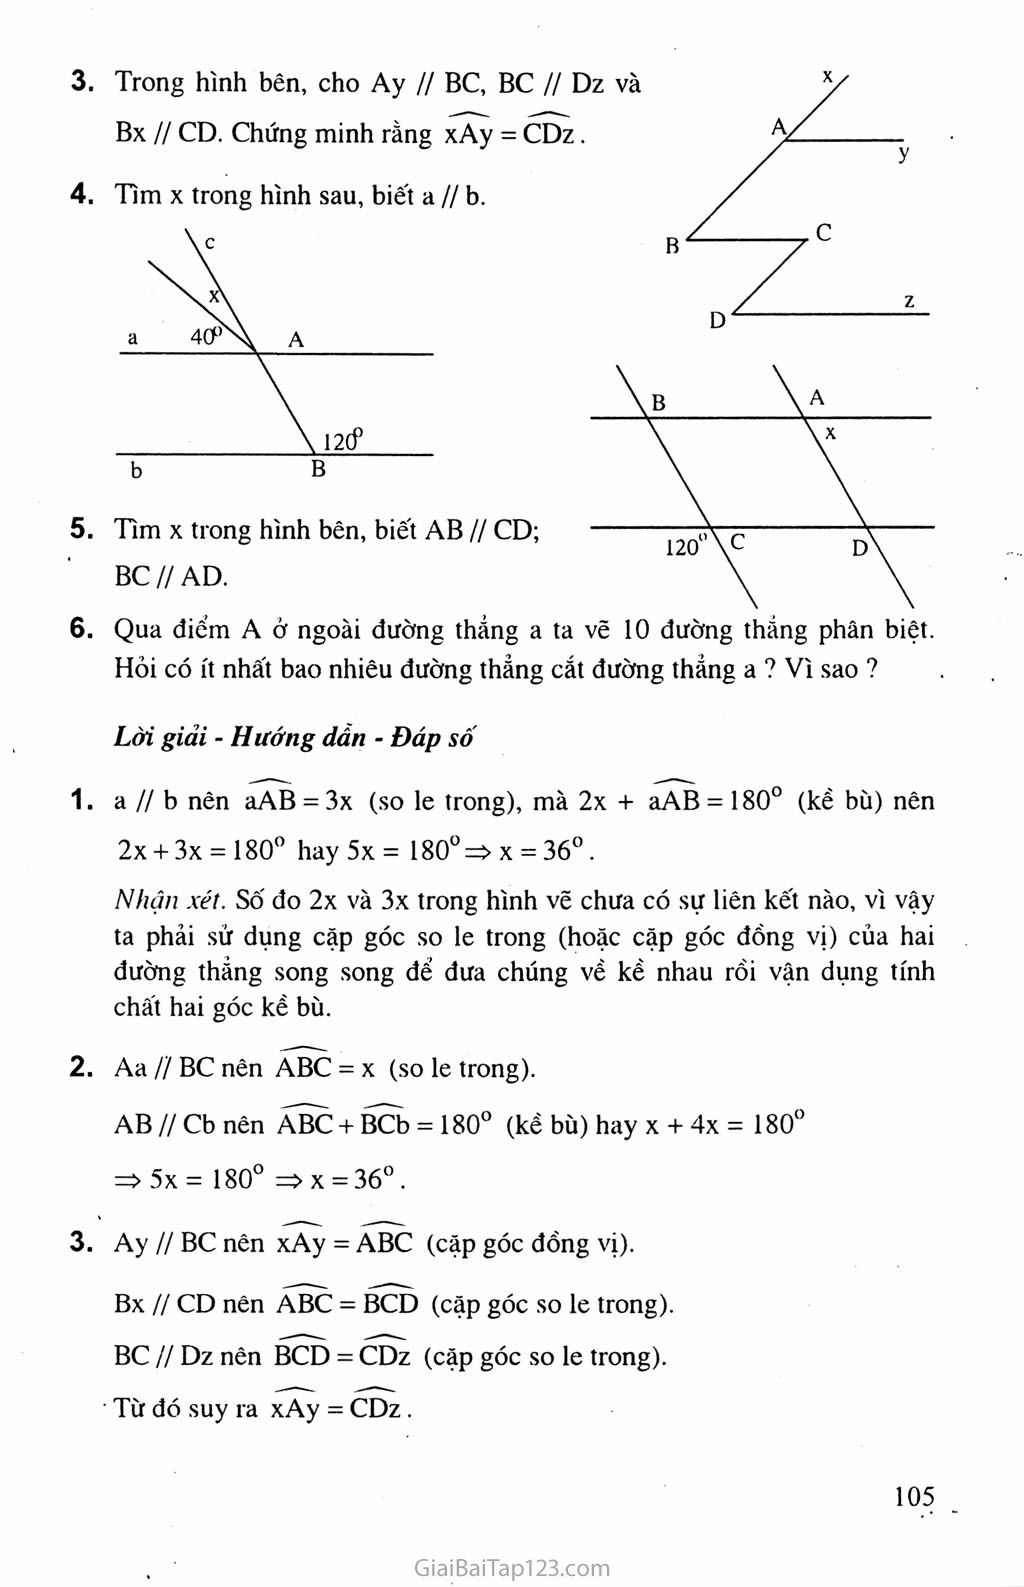 Bài 5. Tiên đề Ơ-clit về đường thẳng song song trang 5